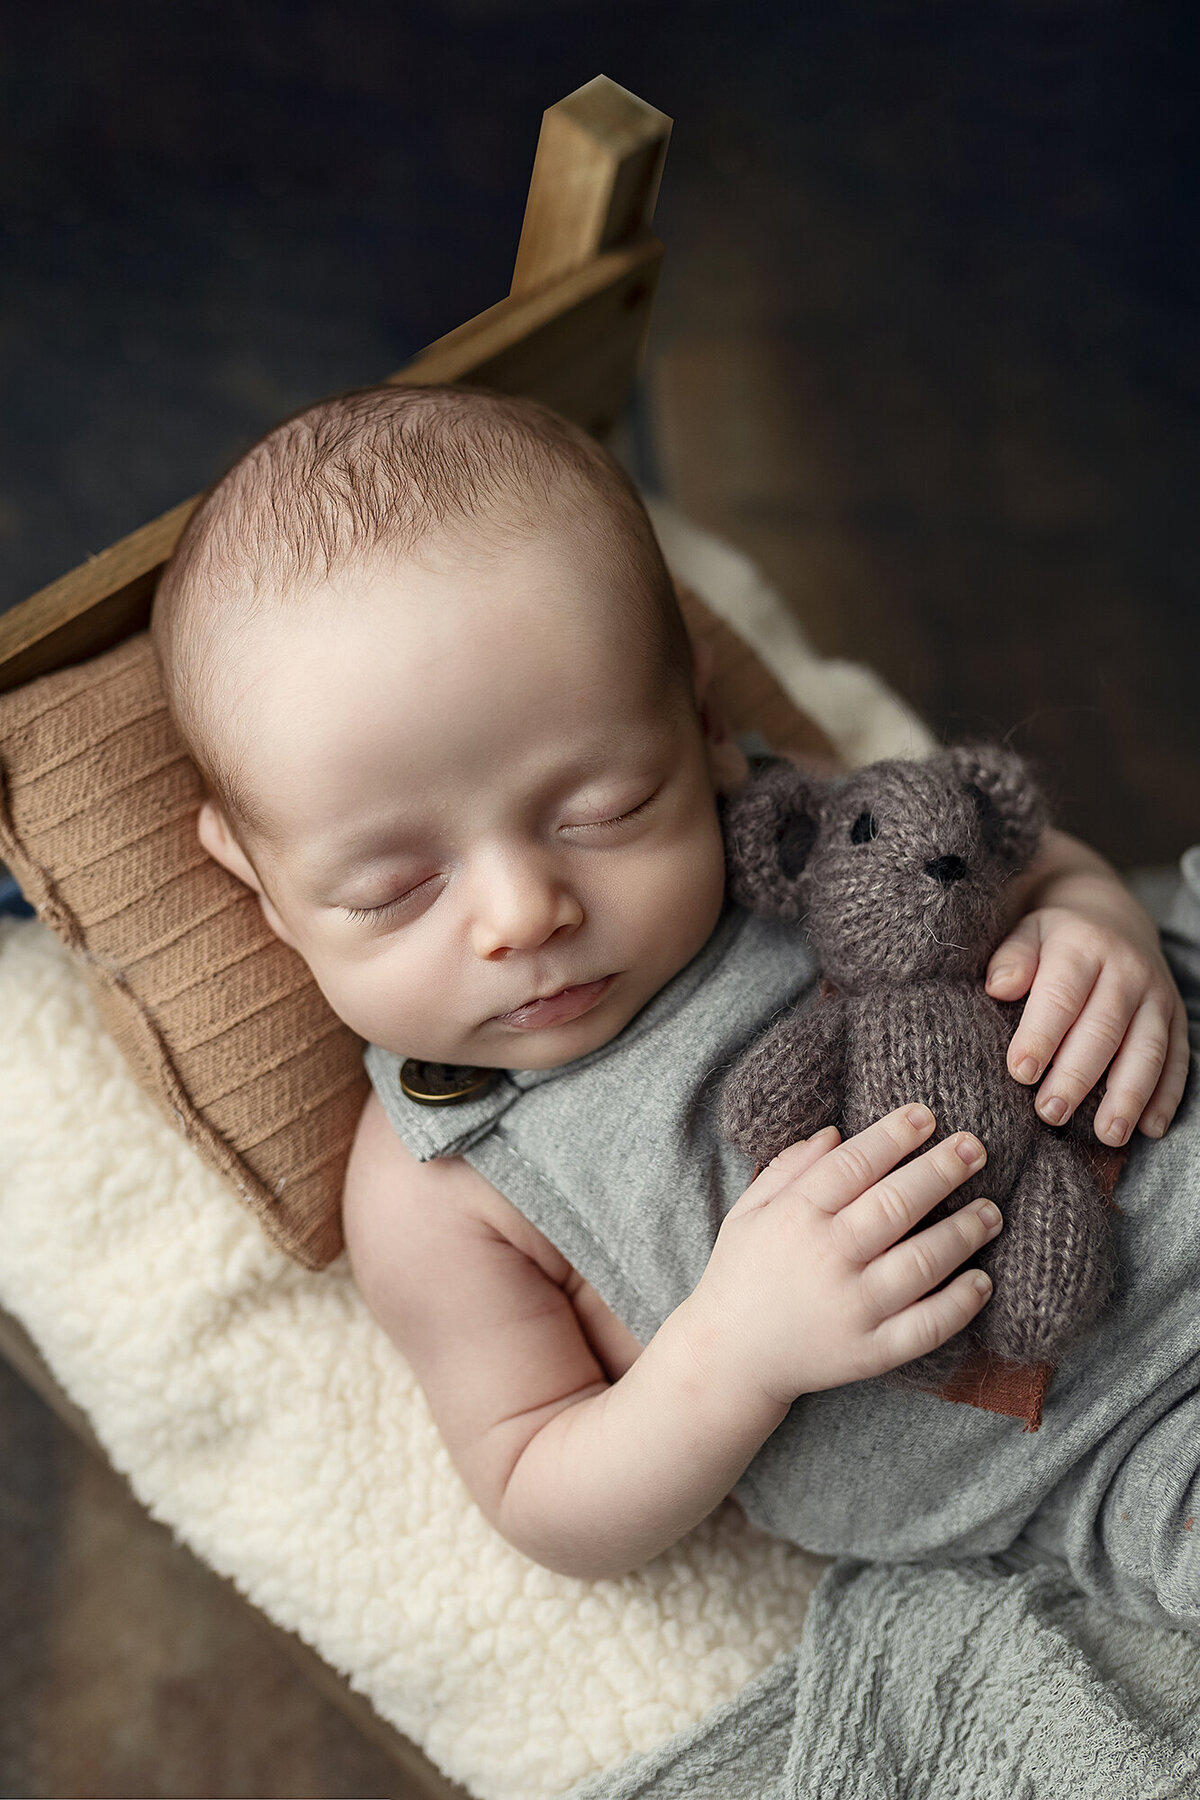 Baby boy holding a brown teddy bear.